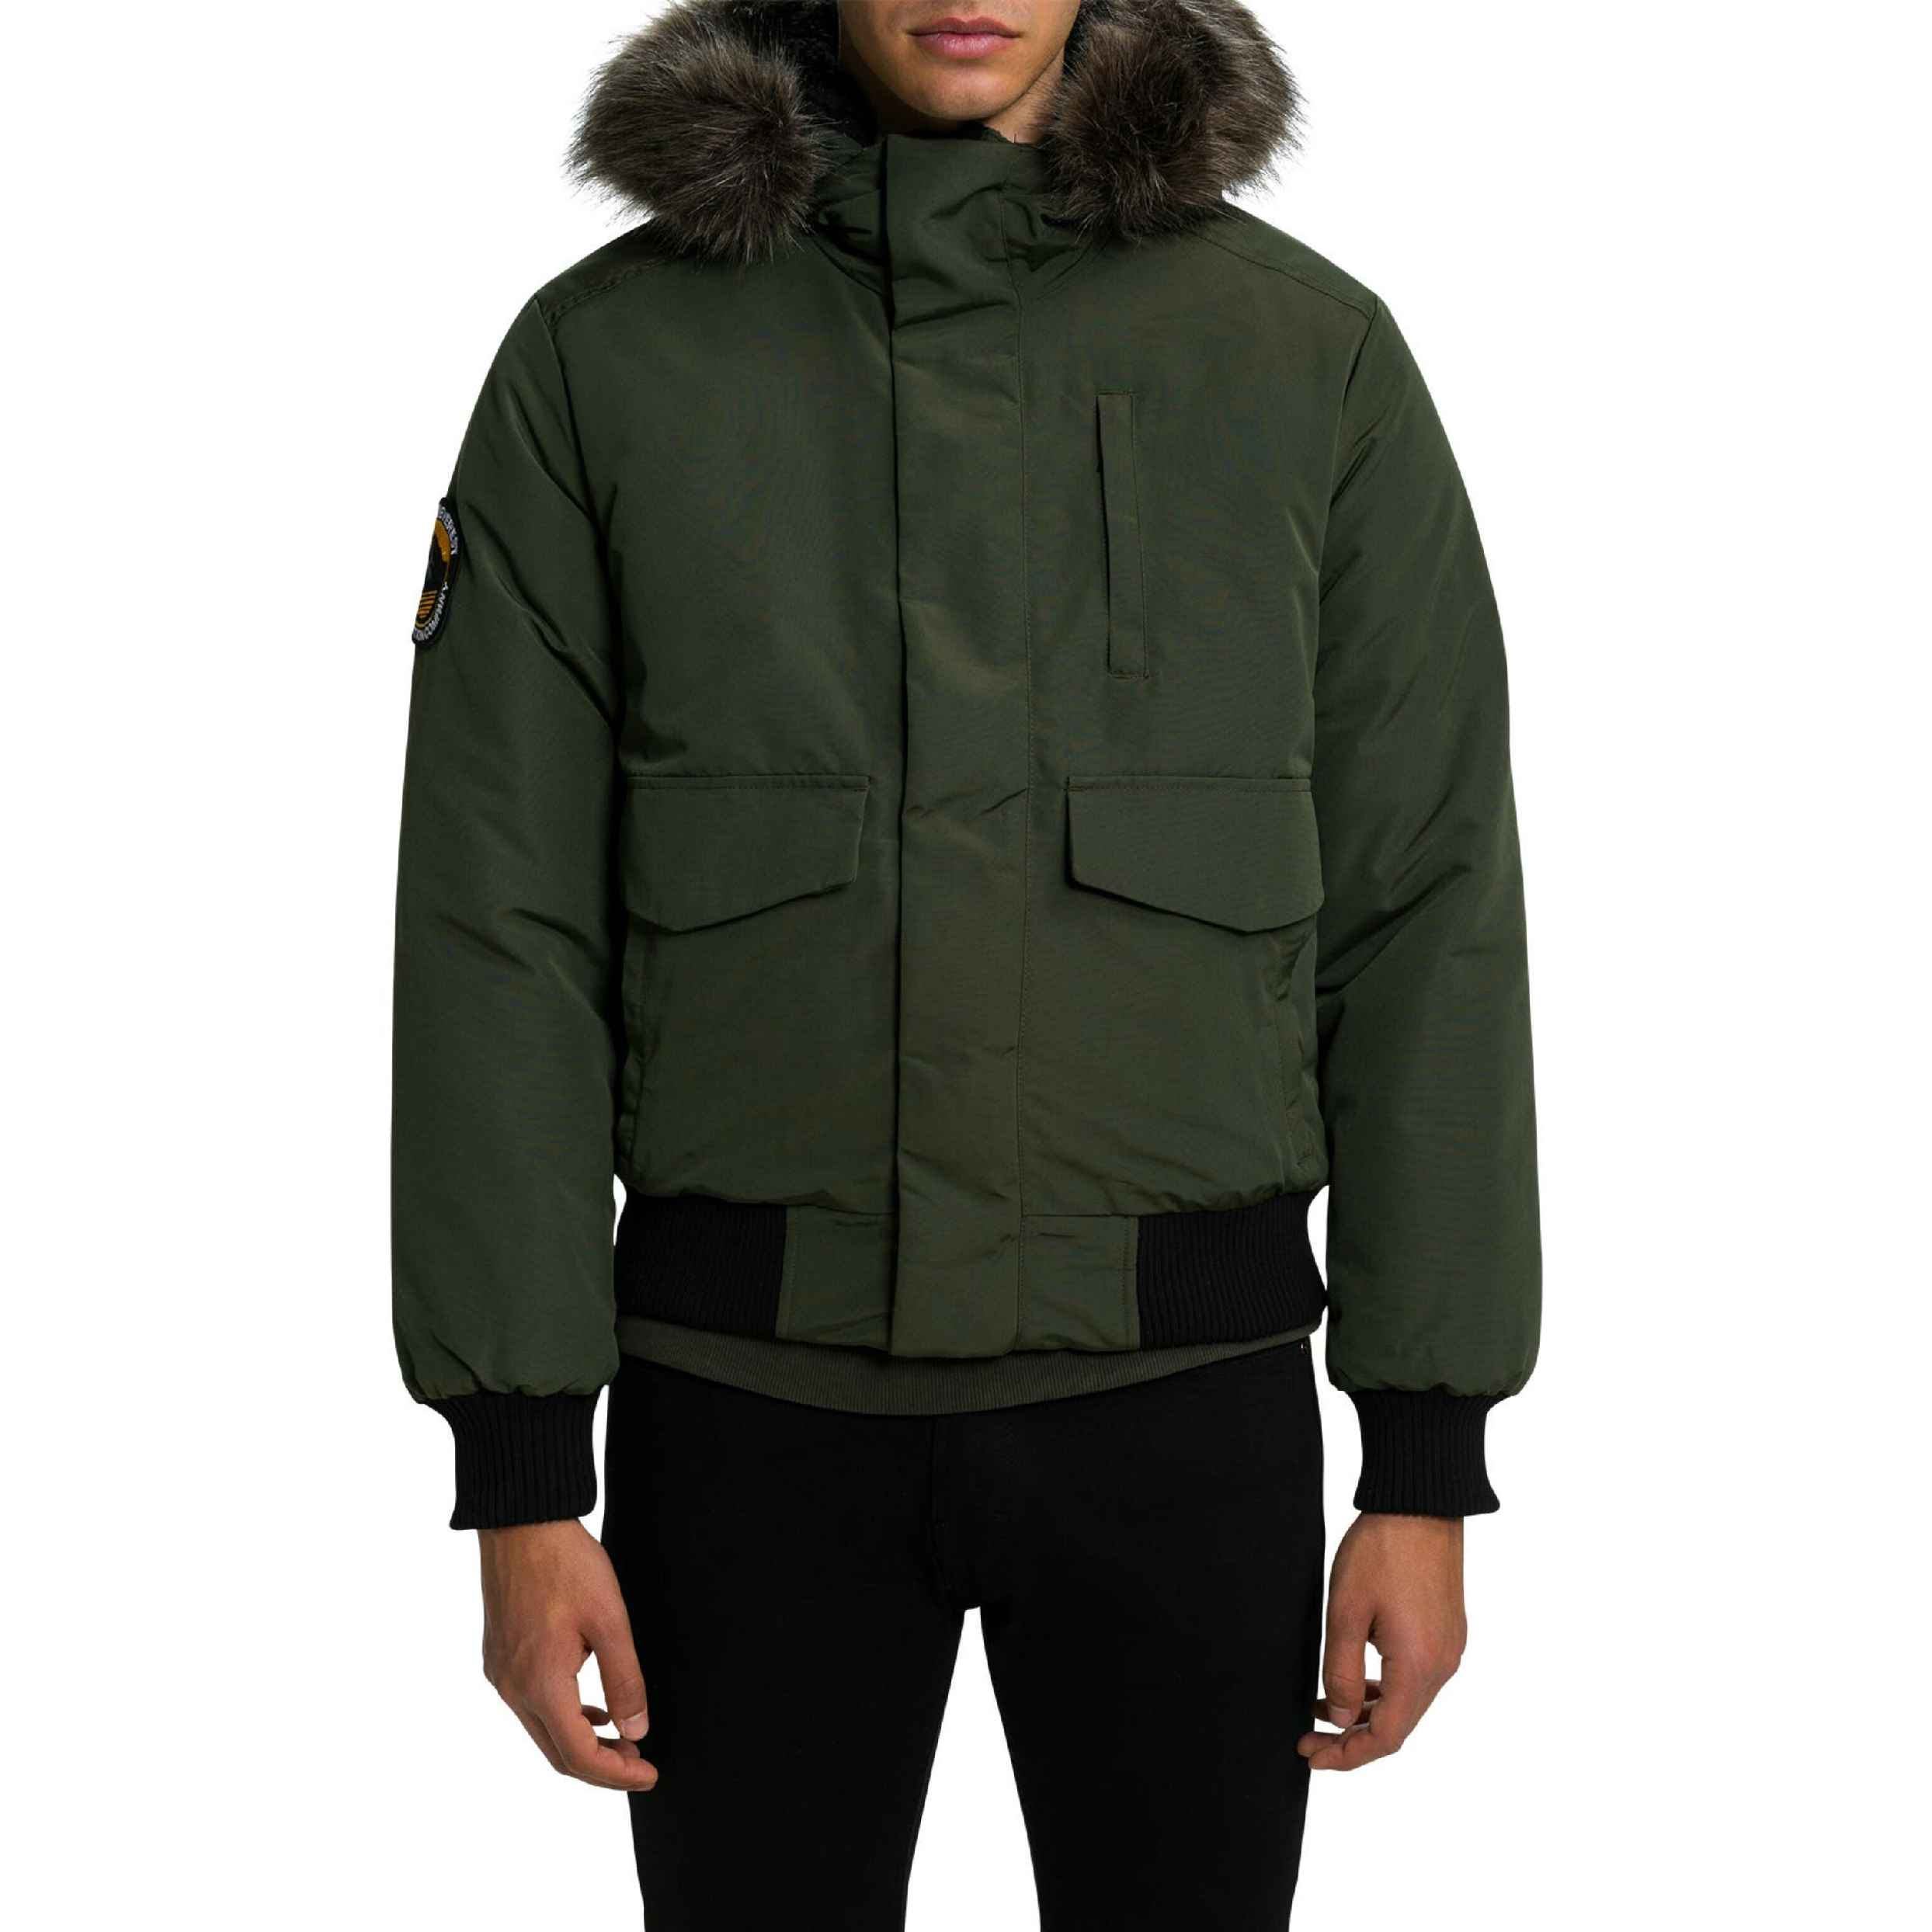 نکته خرید - قیمت روز کاپشن مردانه سوپردرای مدل Winter jacket Everest olive خرید